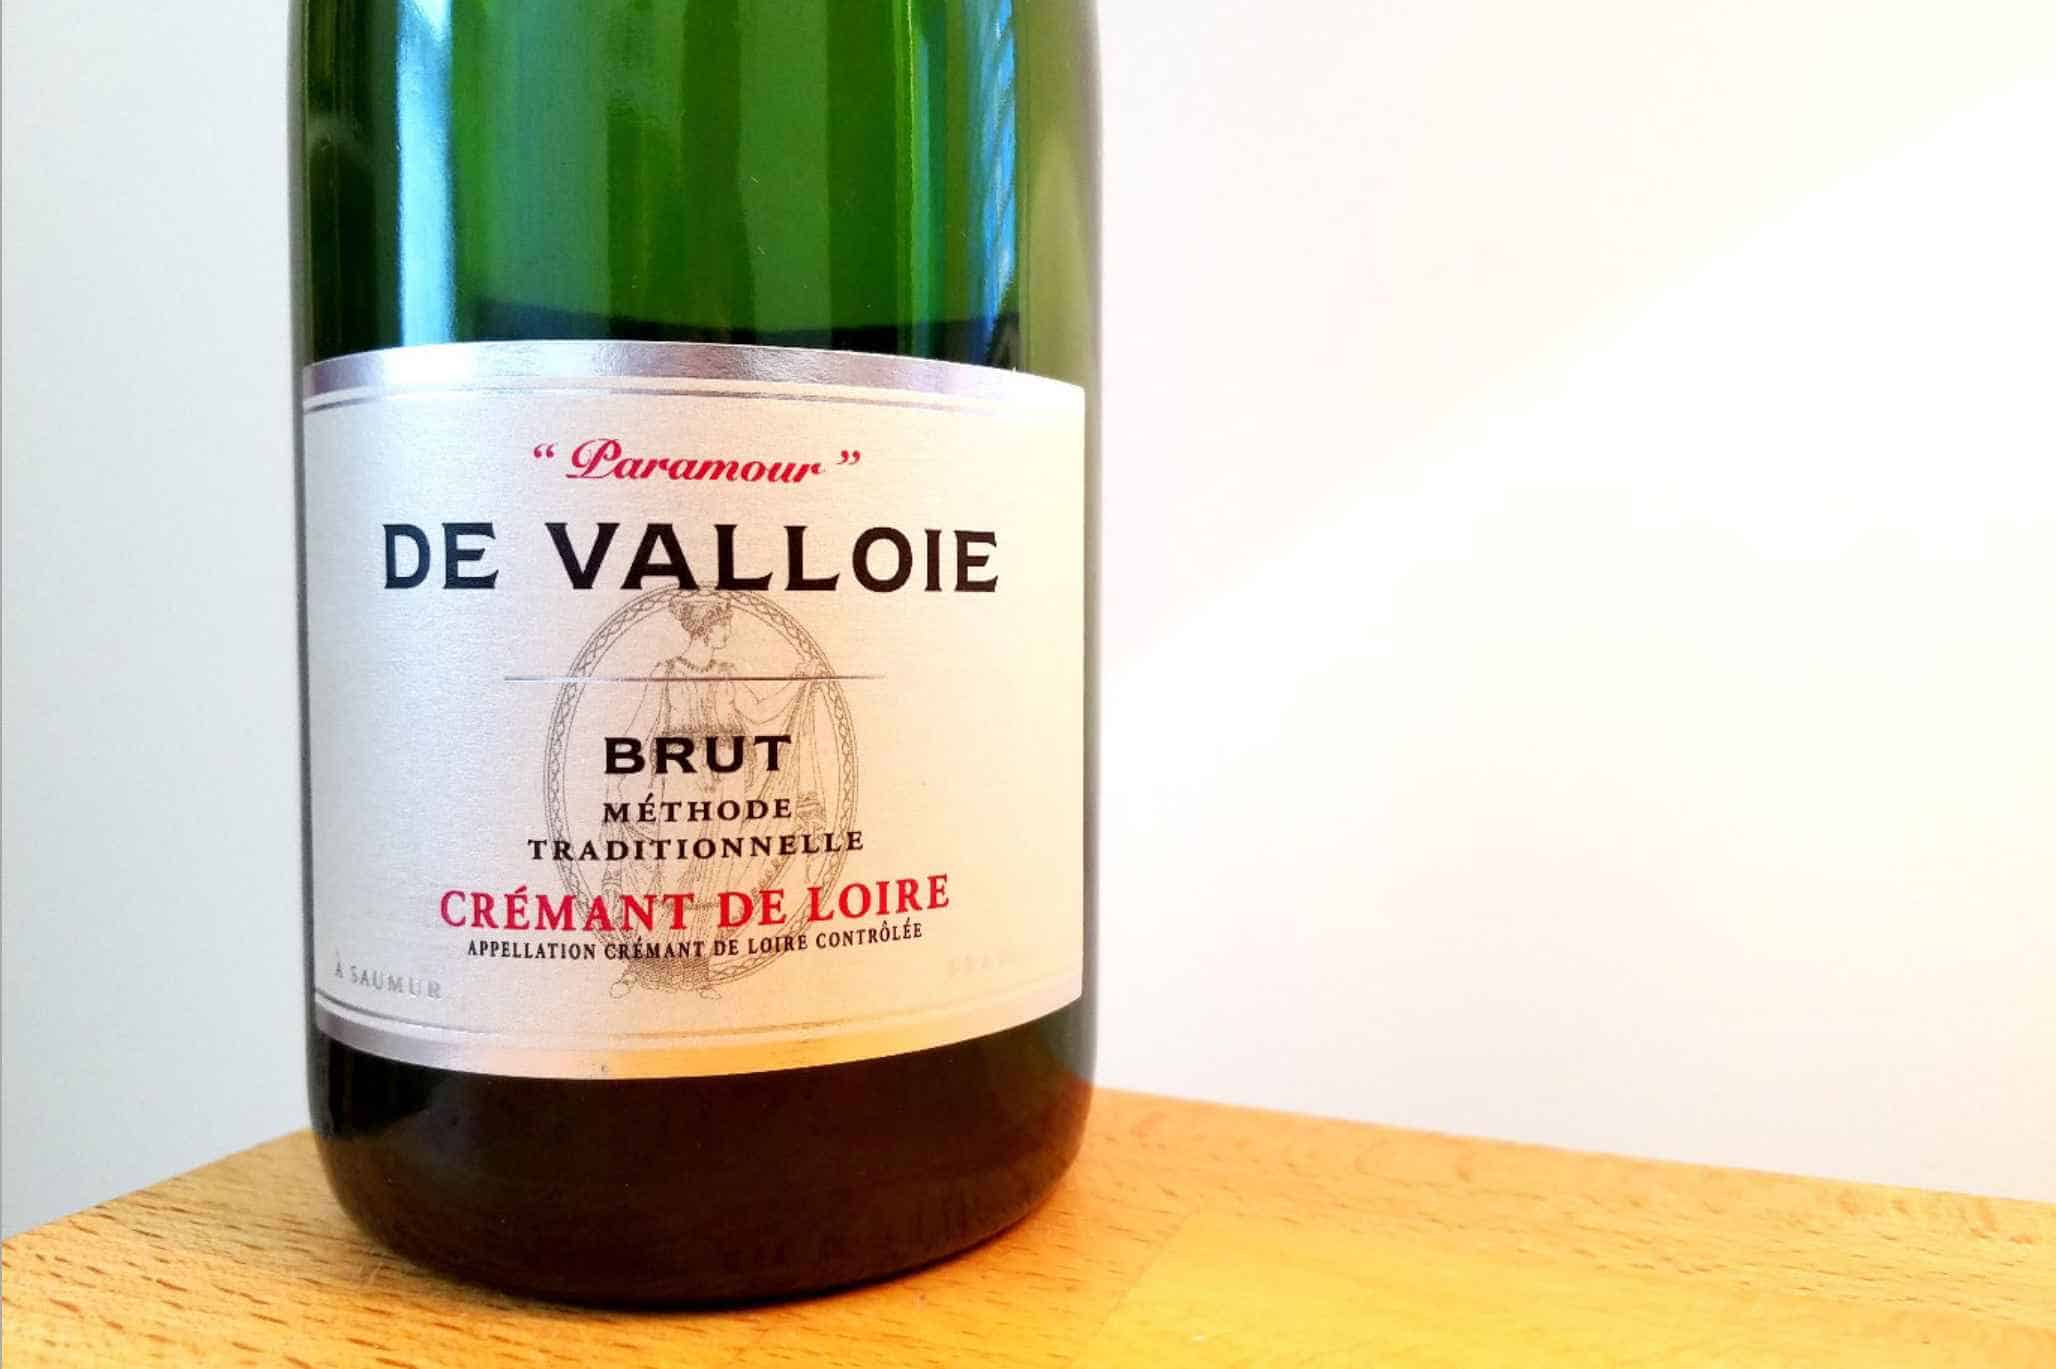 De Valloire Cremant de Loire ‘Paramour’ Methode Traditionnelle Brut